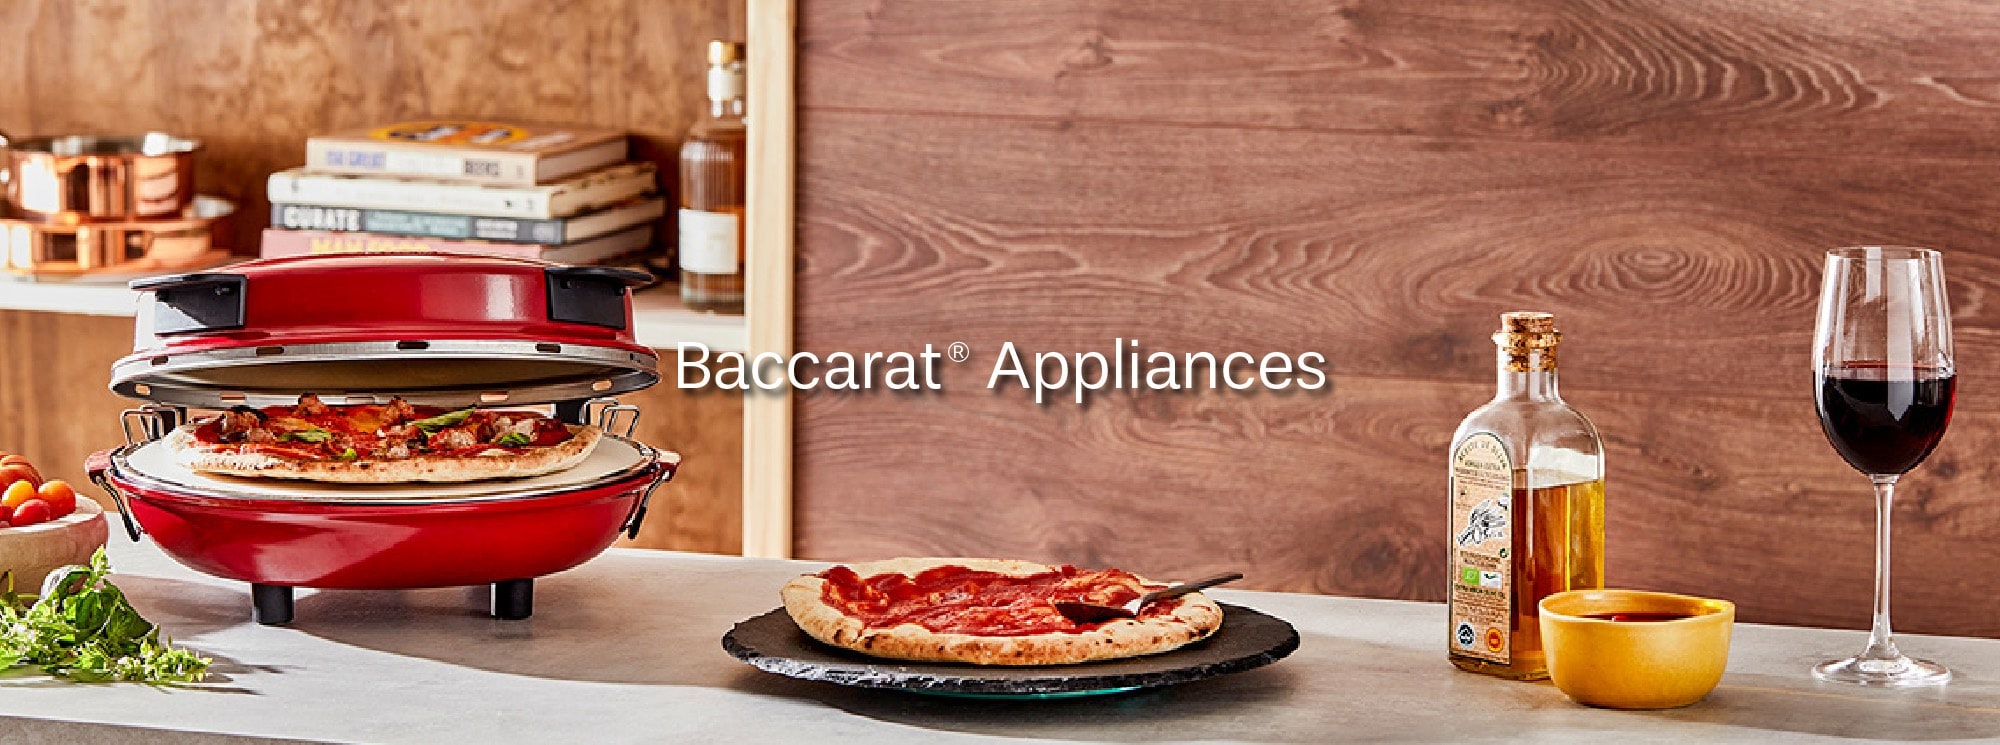 Baccarat Appliances